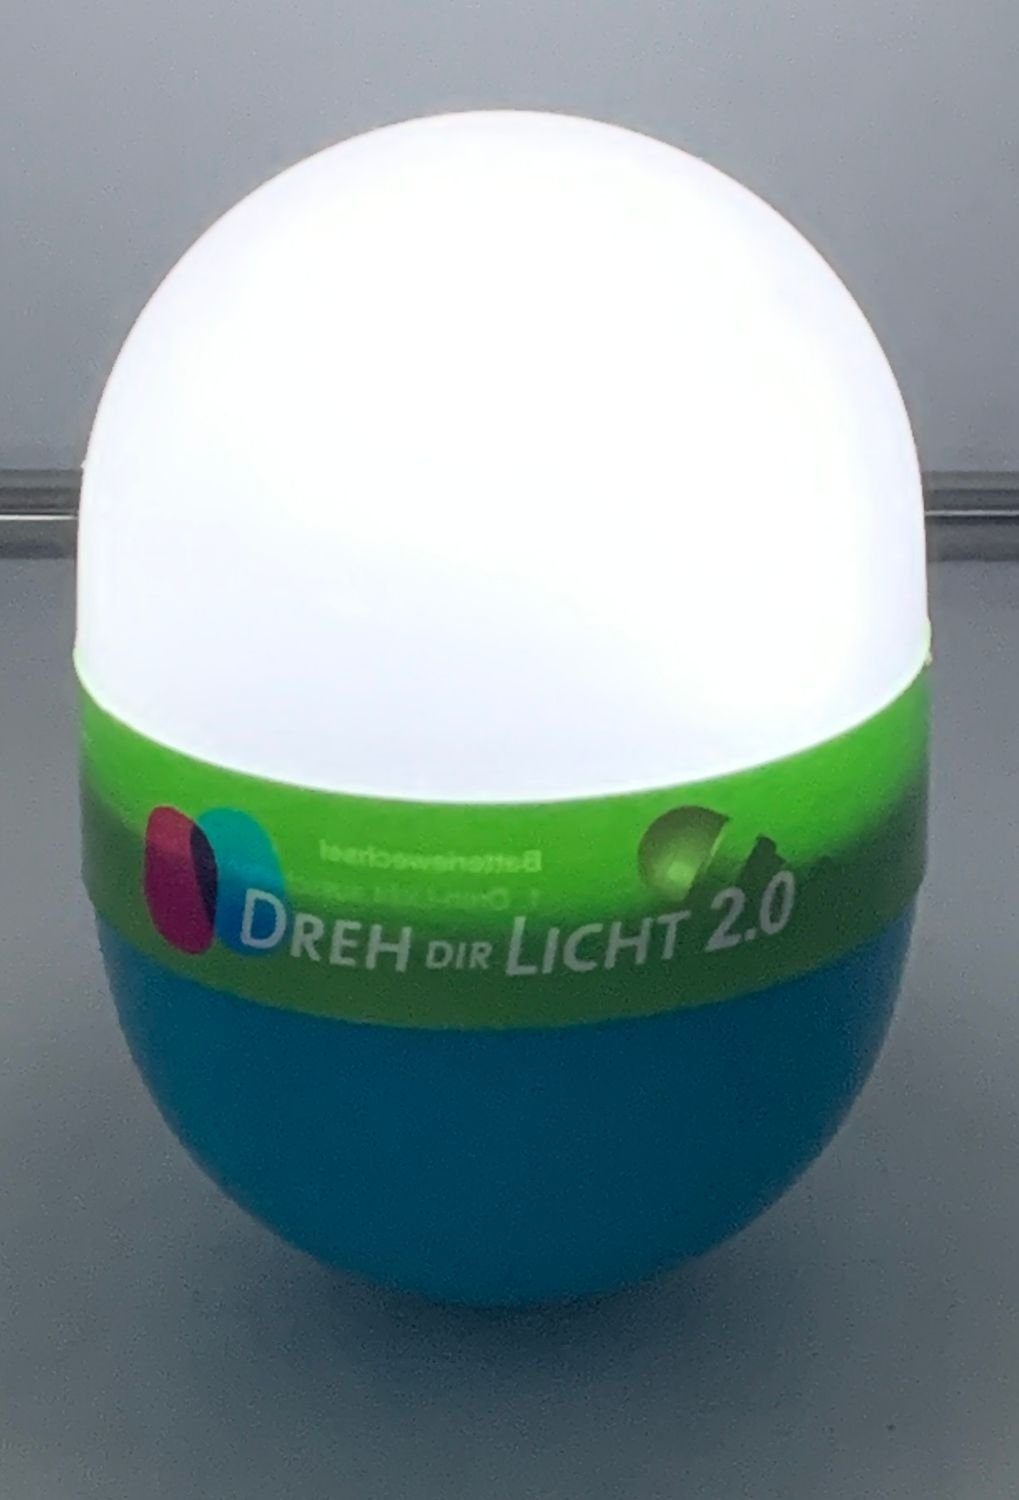 BURI LED Dekolicht Dreh Dir Licht Campinglampe Leselam Nachtlicht grün 2.0 Taschenlampe 12,5cm